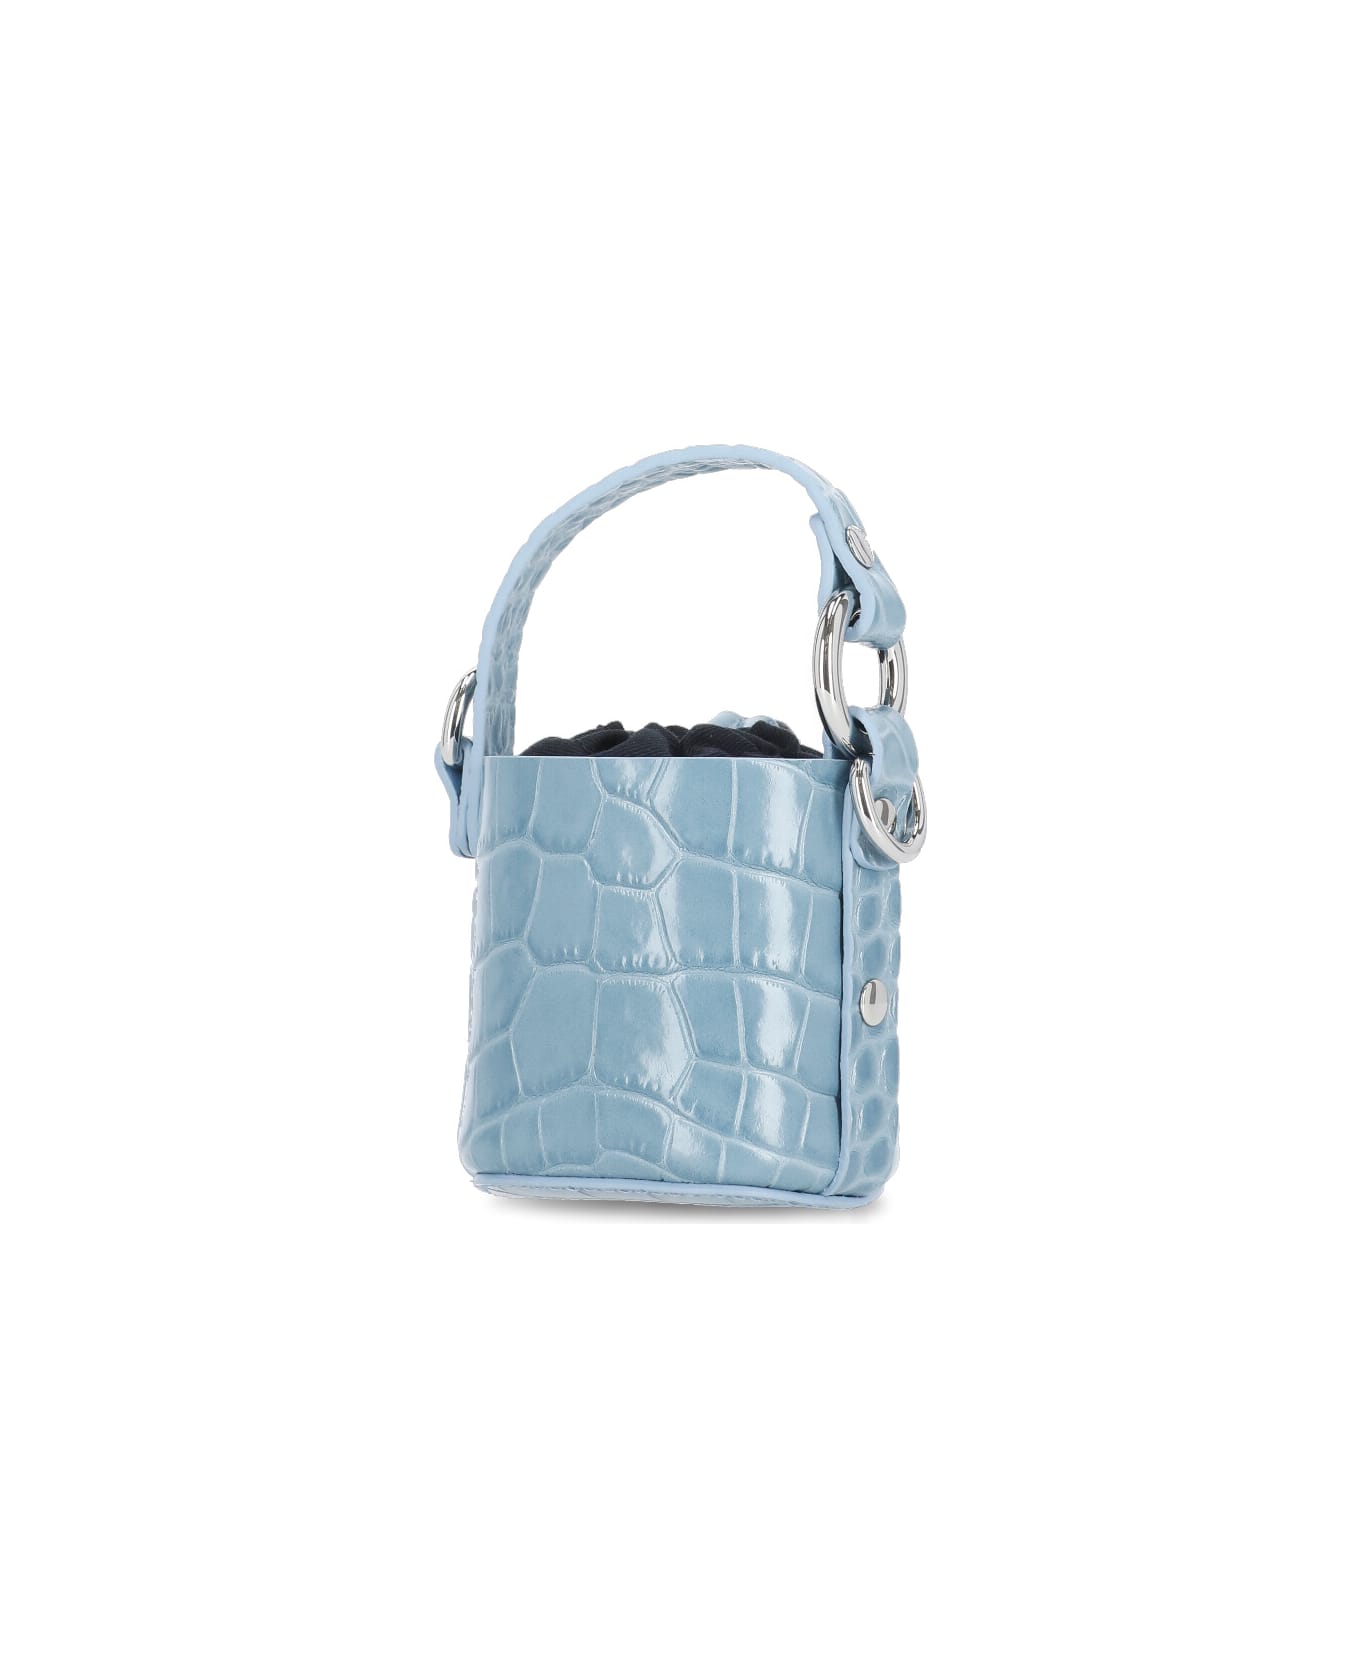 Vivienne Westwood Mini Daisy Bag - Light Blue